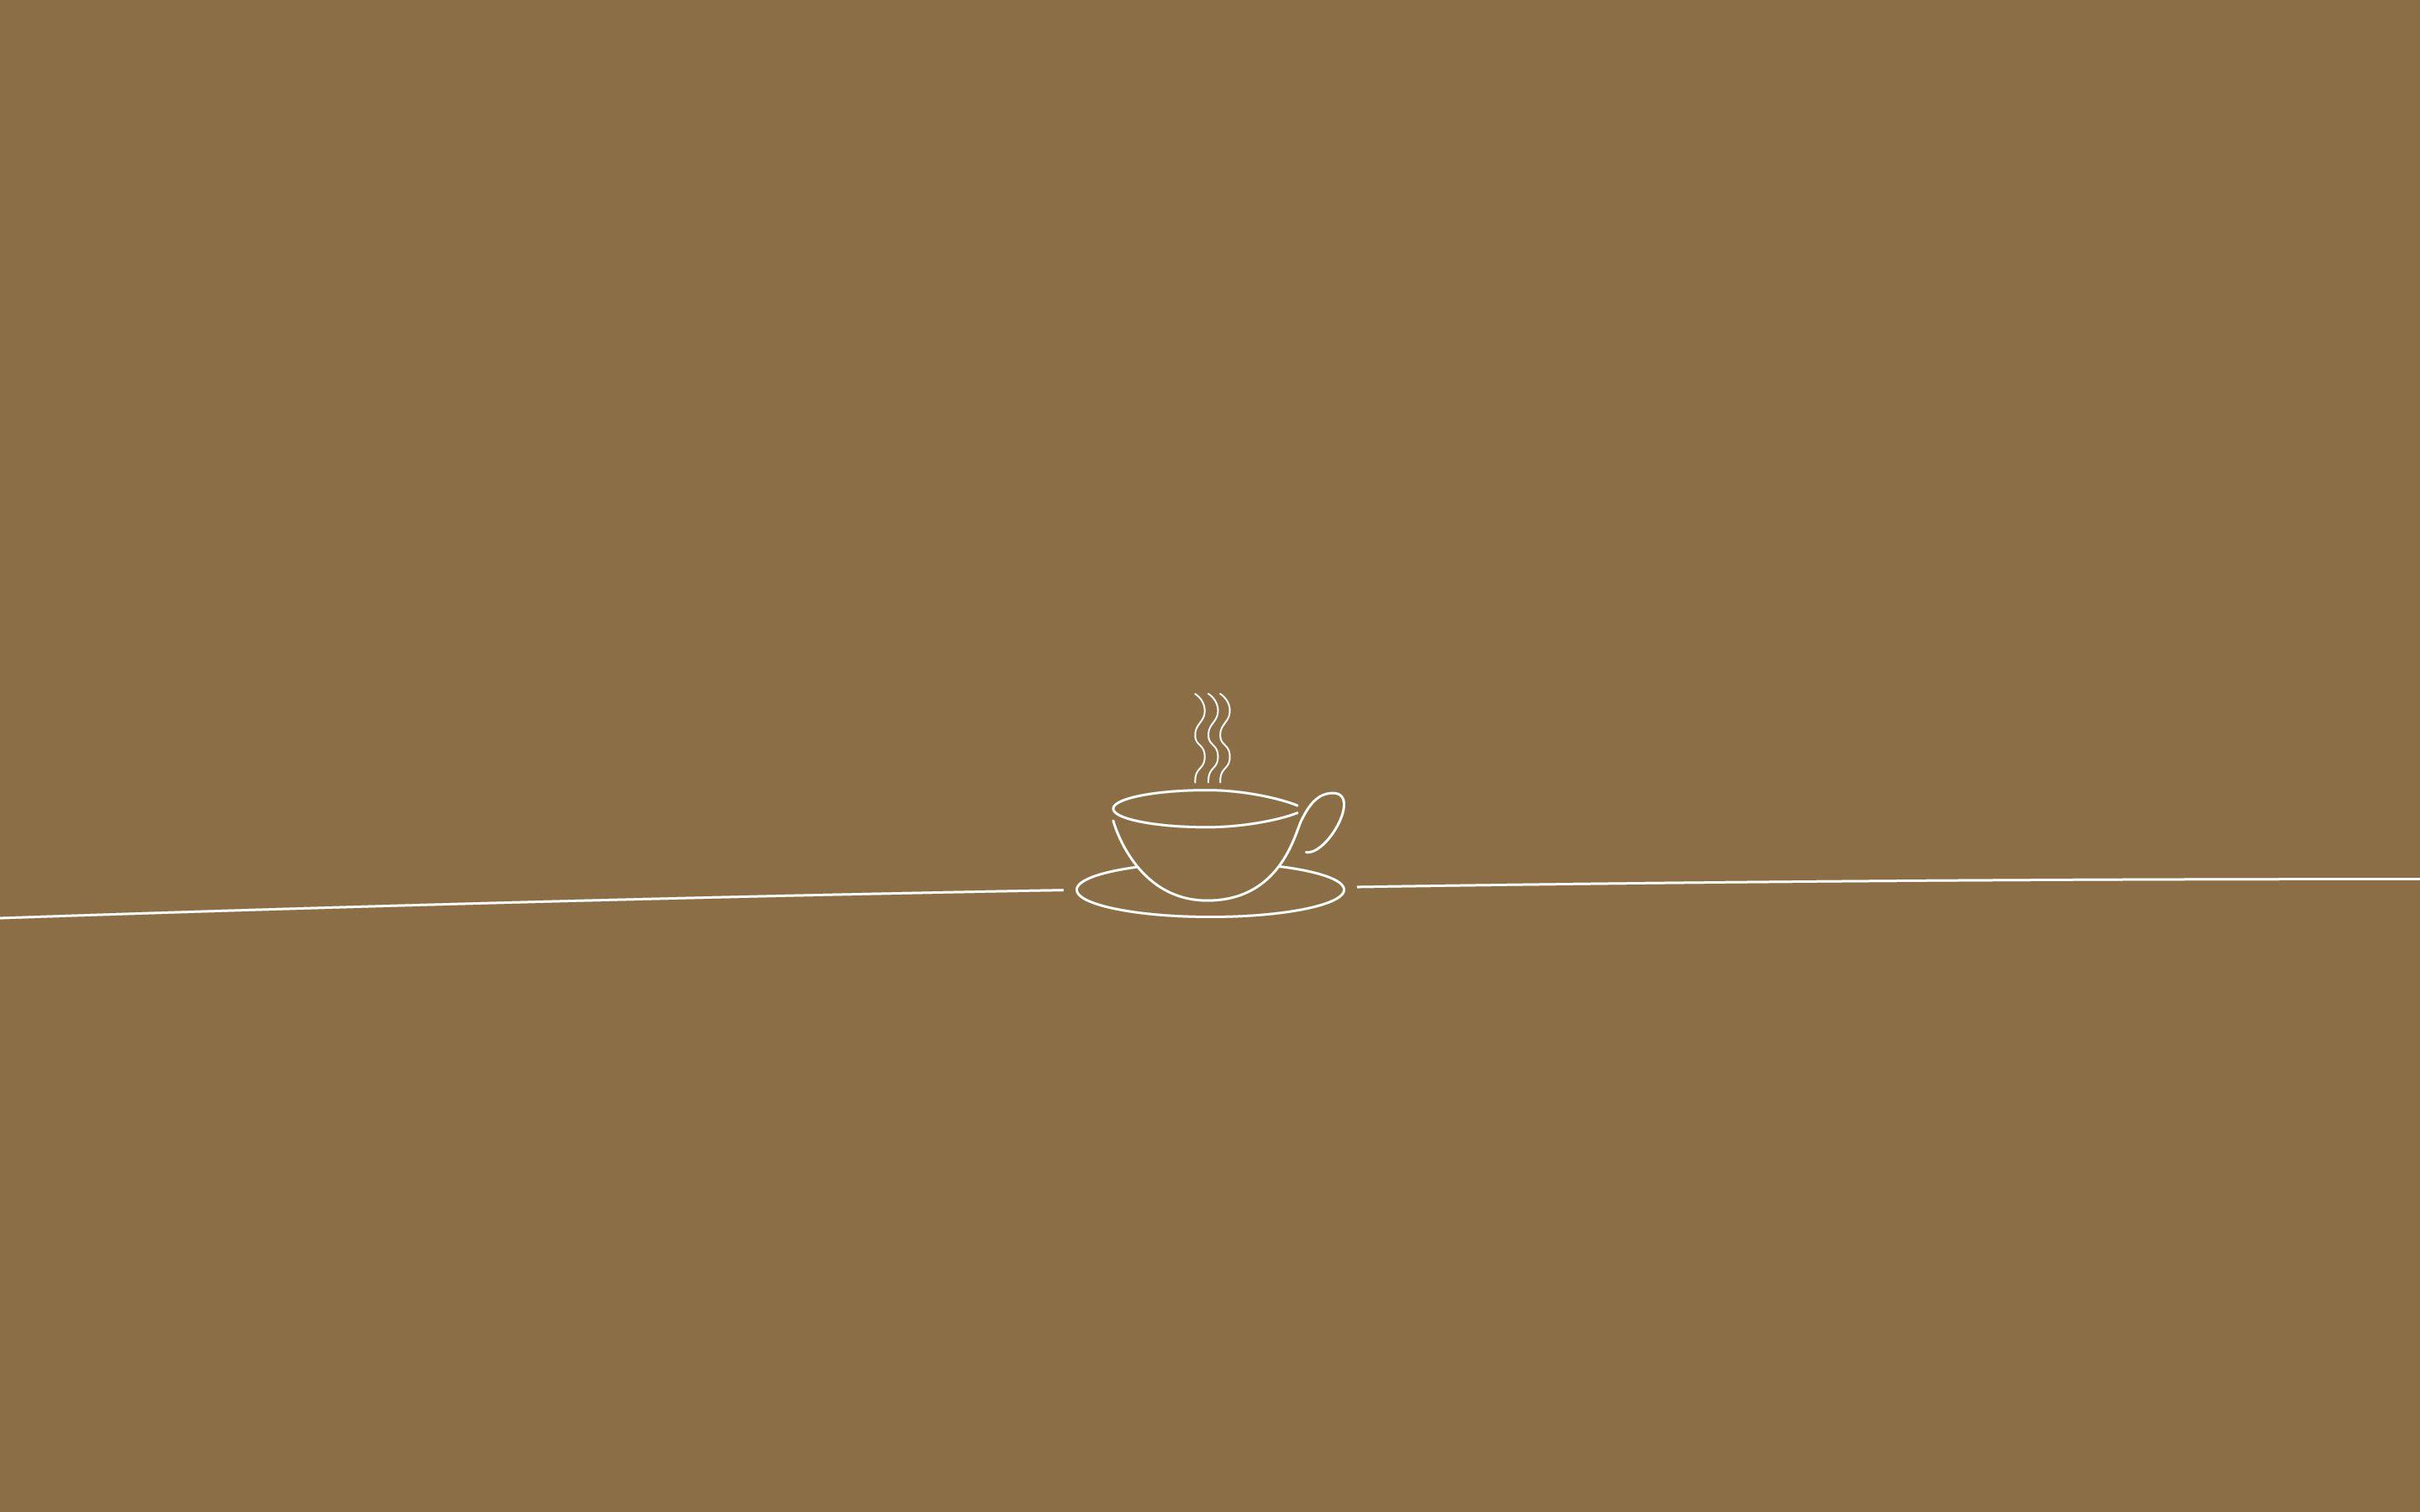 Minimalist Coffee Wallpapers - Top Những Hình Ảnh Đẹp